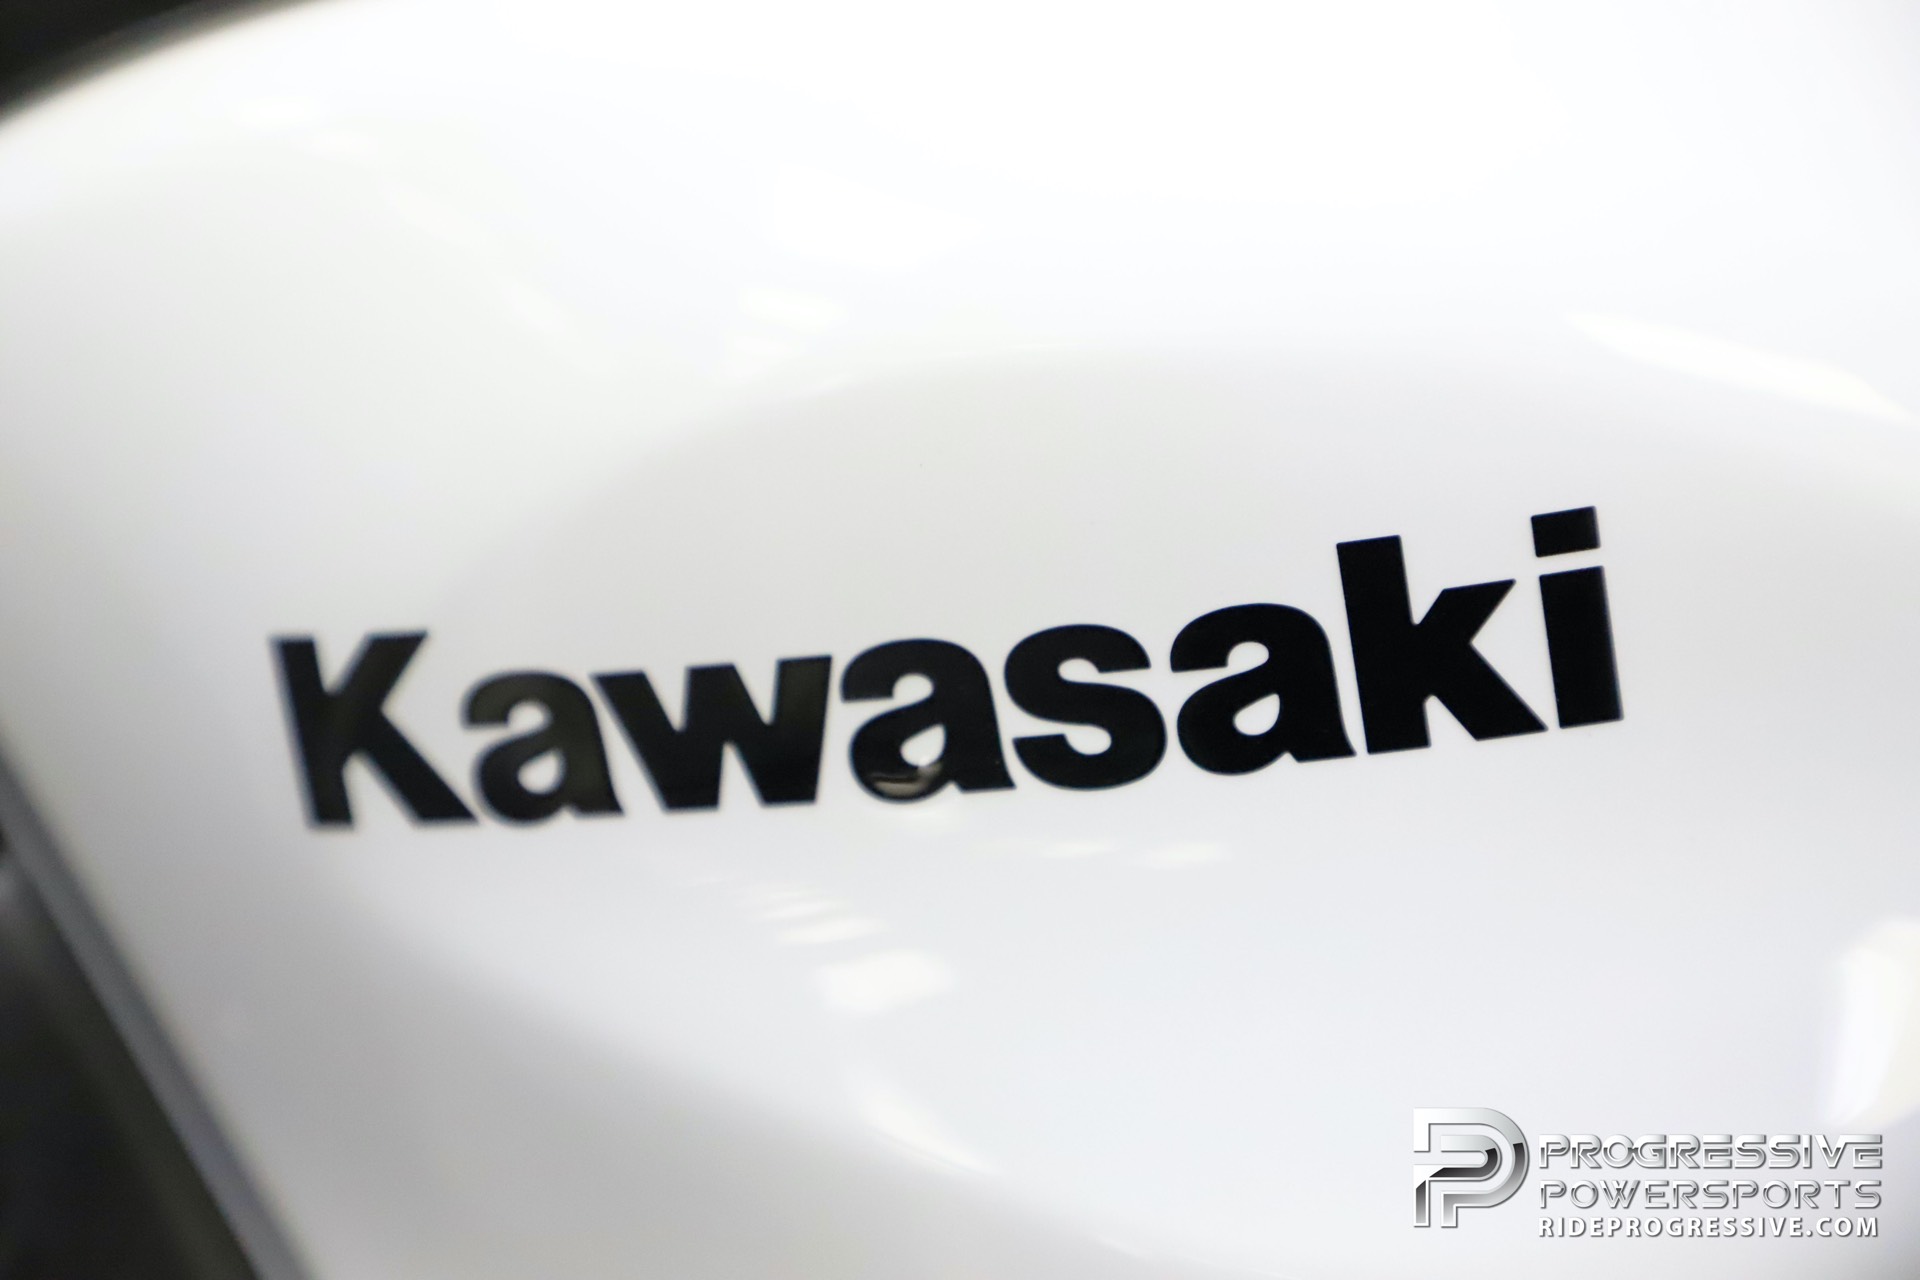 2020 Kawasaki Ninja 650 ABS 5